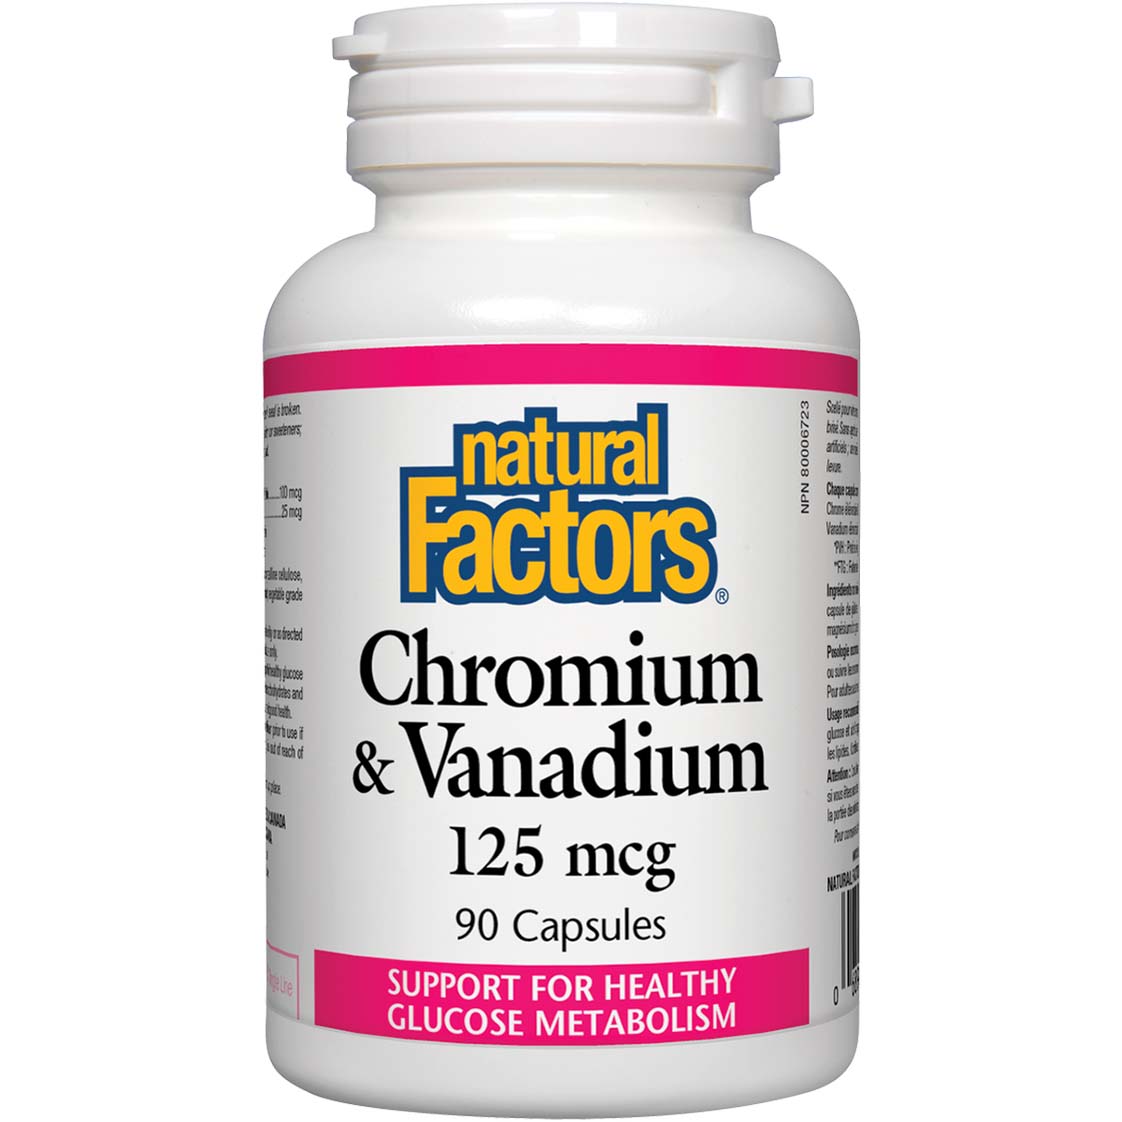 Natural Factors Chromium & Vanadium 90 Capsules 125 mcg